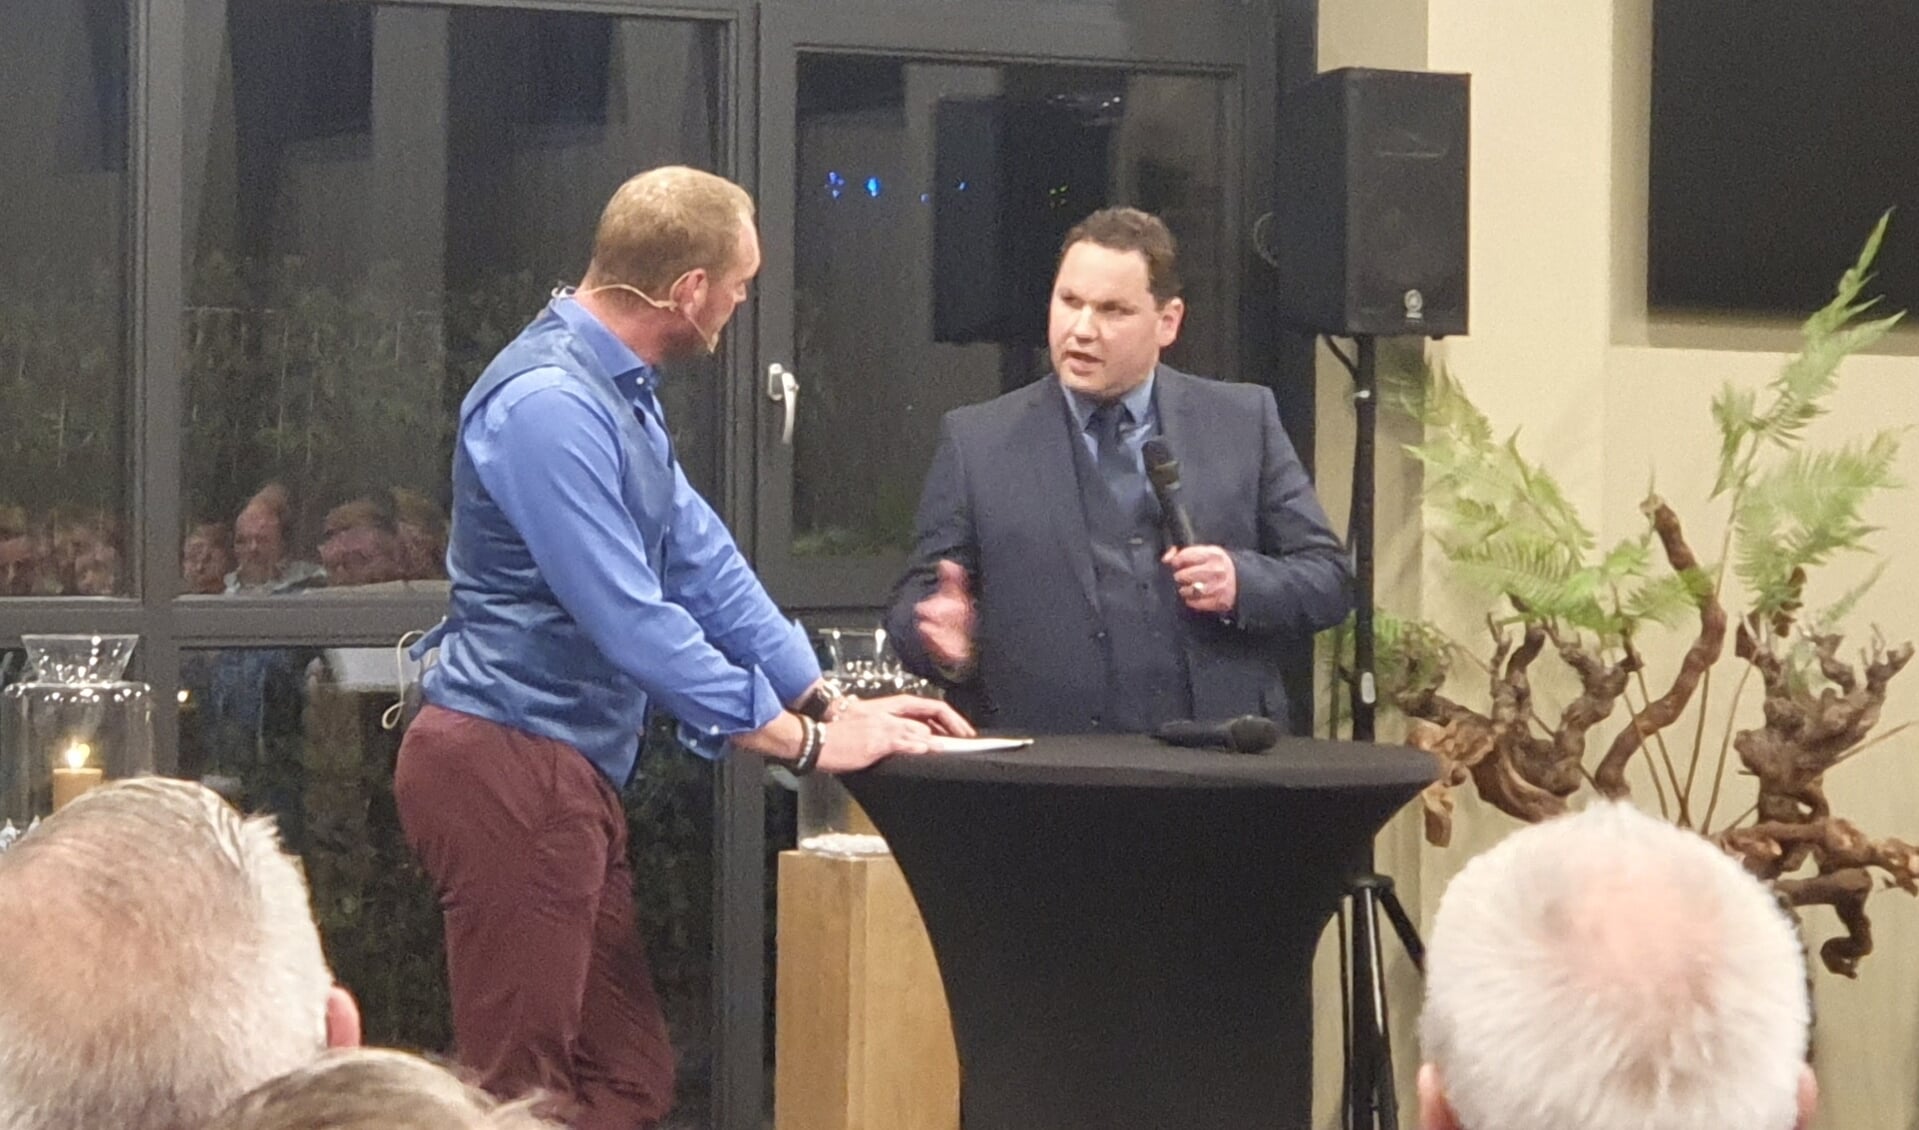 Uitvaartverzorger August van Zon (rechts) tijdens de opening in gesprek met Marcel Nieuwenweg, die de avond aan elkaar praatte. 